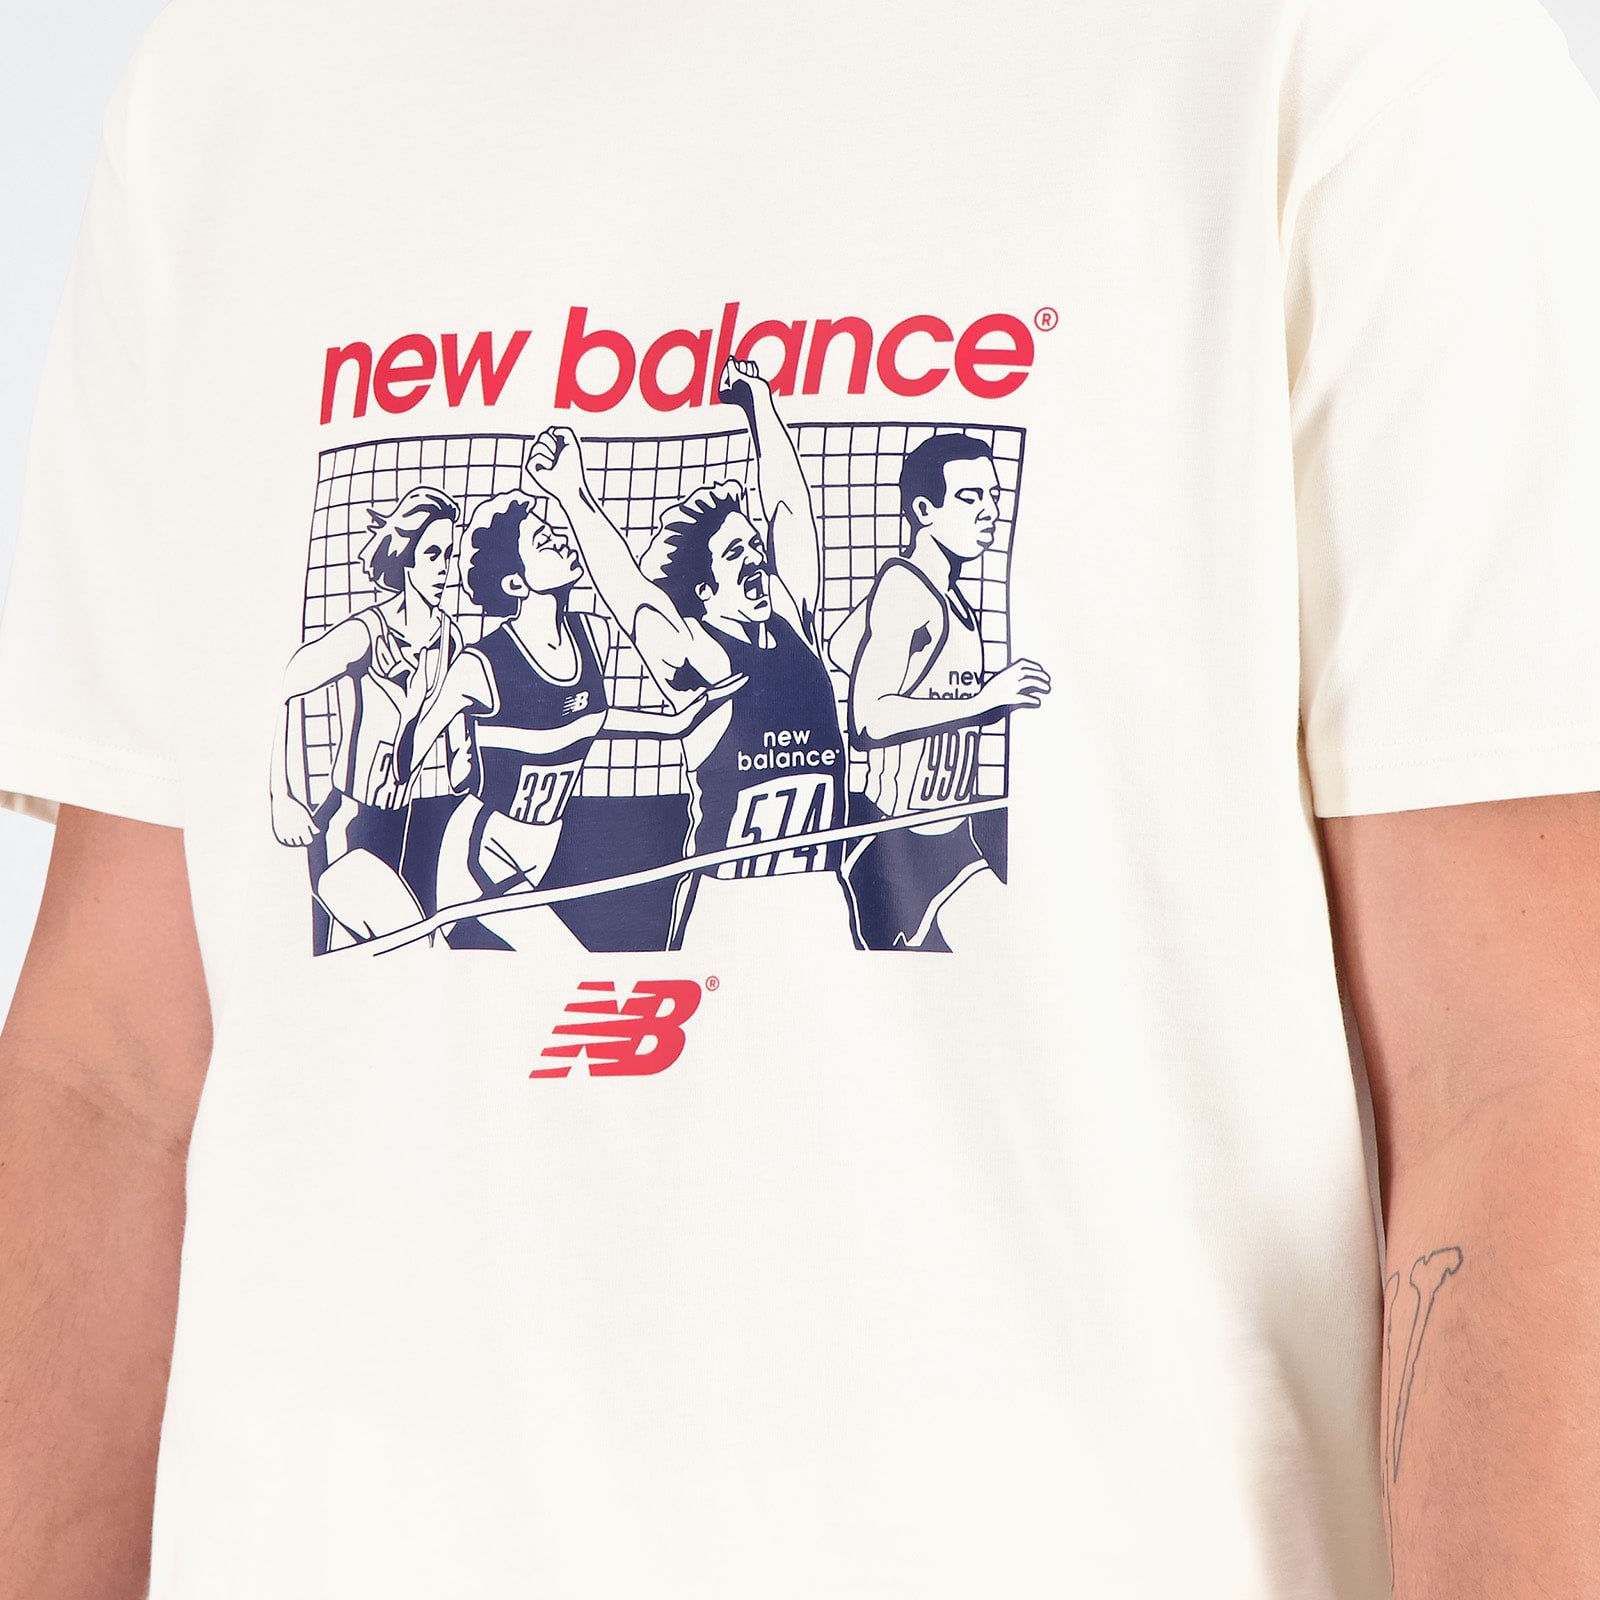 NB Athletics 90's グラフィック ショートスリーブTシャツ